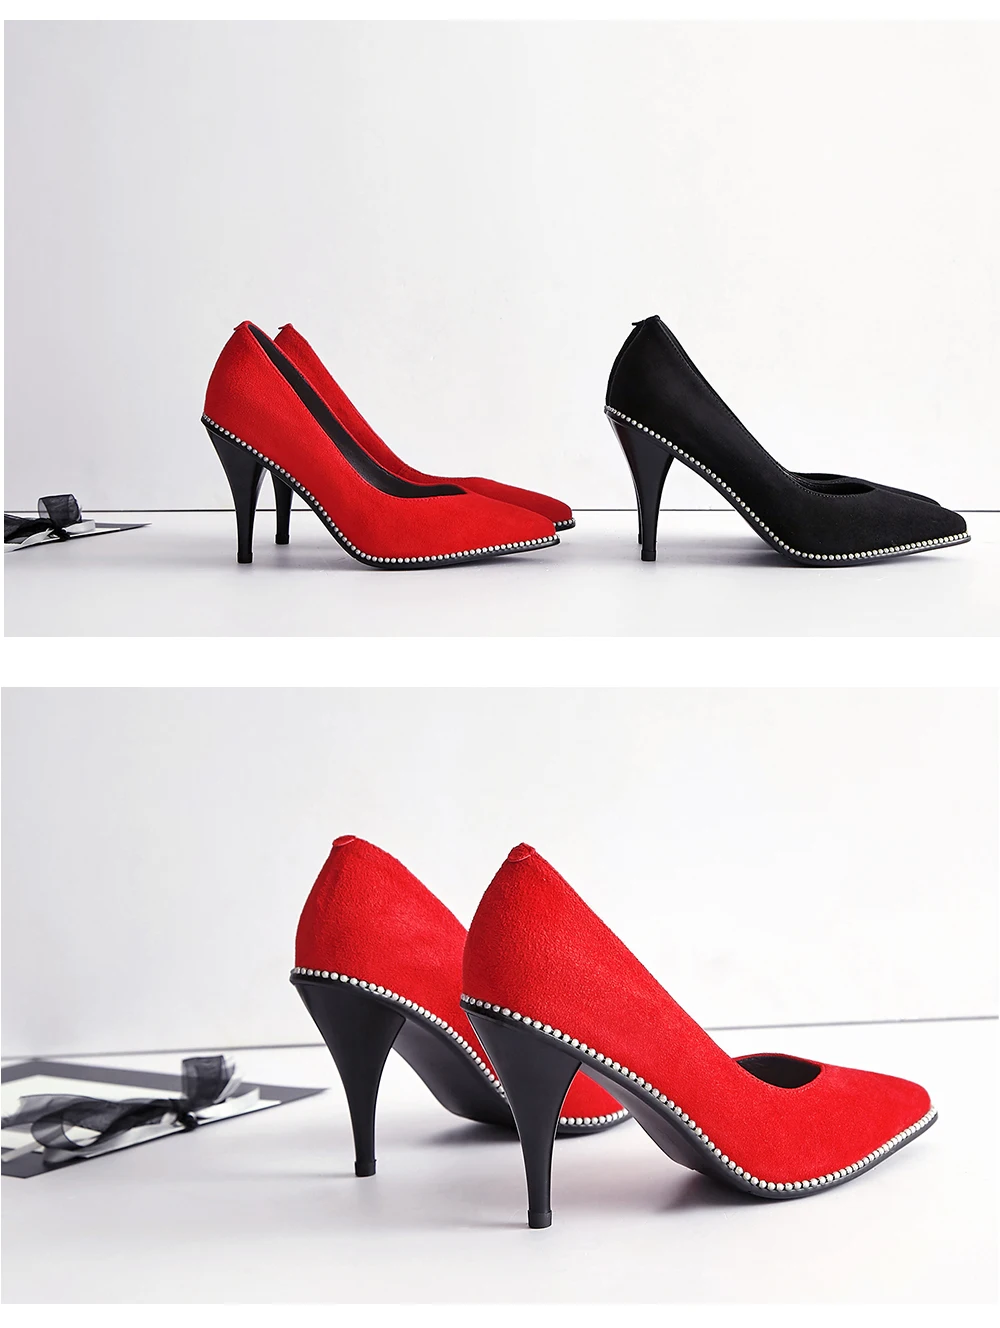 VAIR MUDO/женские туфли-лодочки; модные замшевые туфли на тонком высоком каблуке; цвет черный, красный; сезон весна-лето-осень; женская обувь; D45L